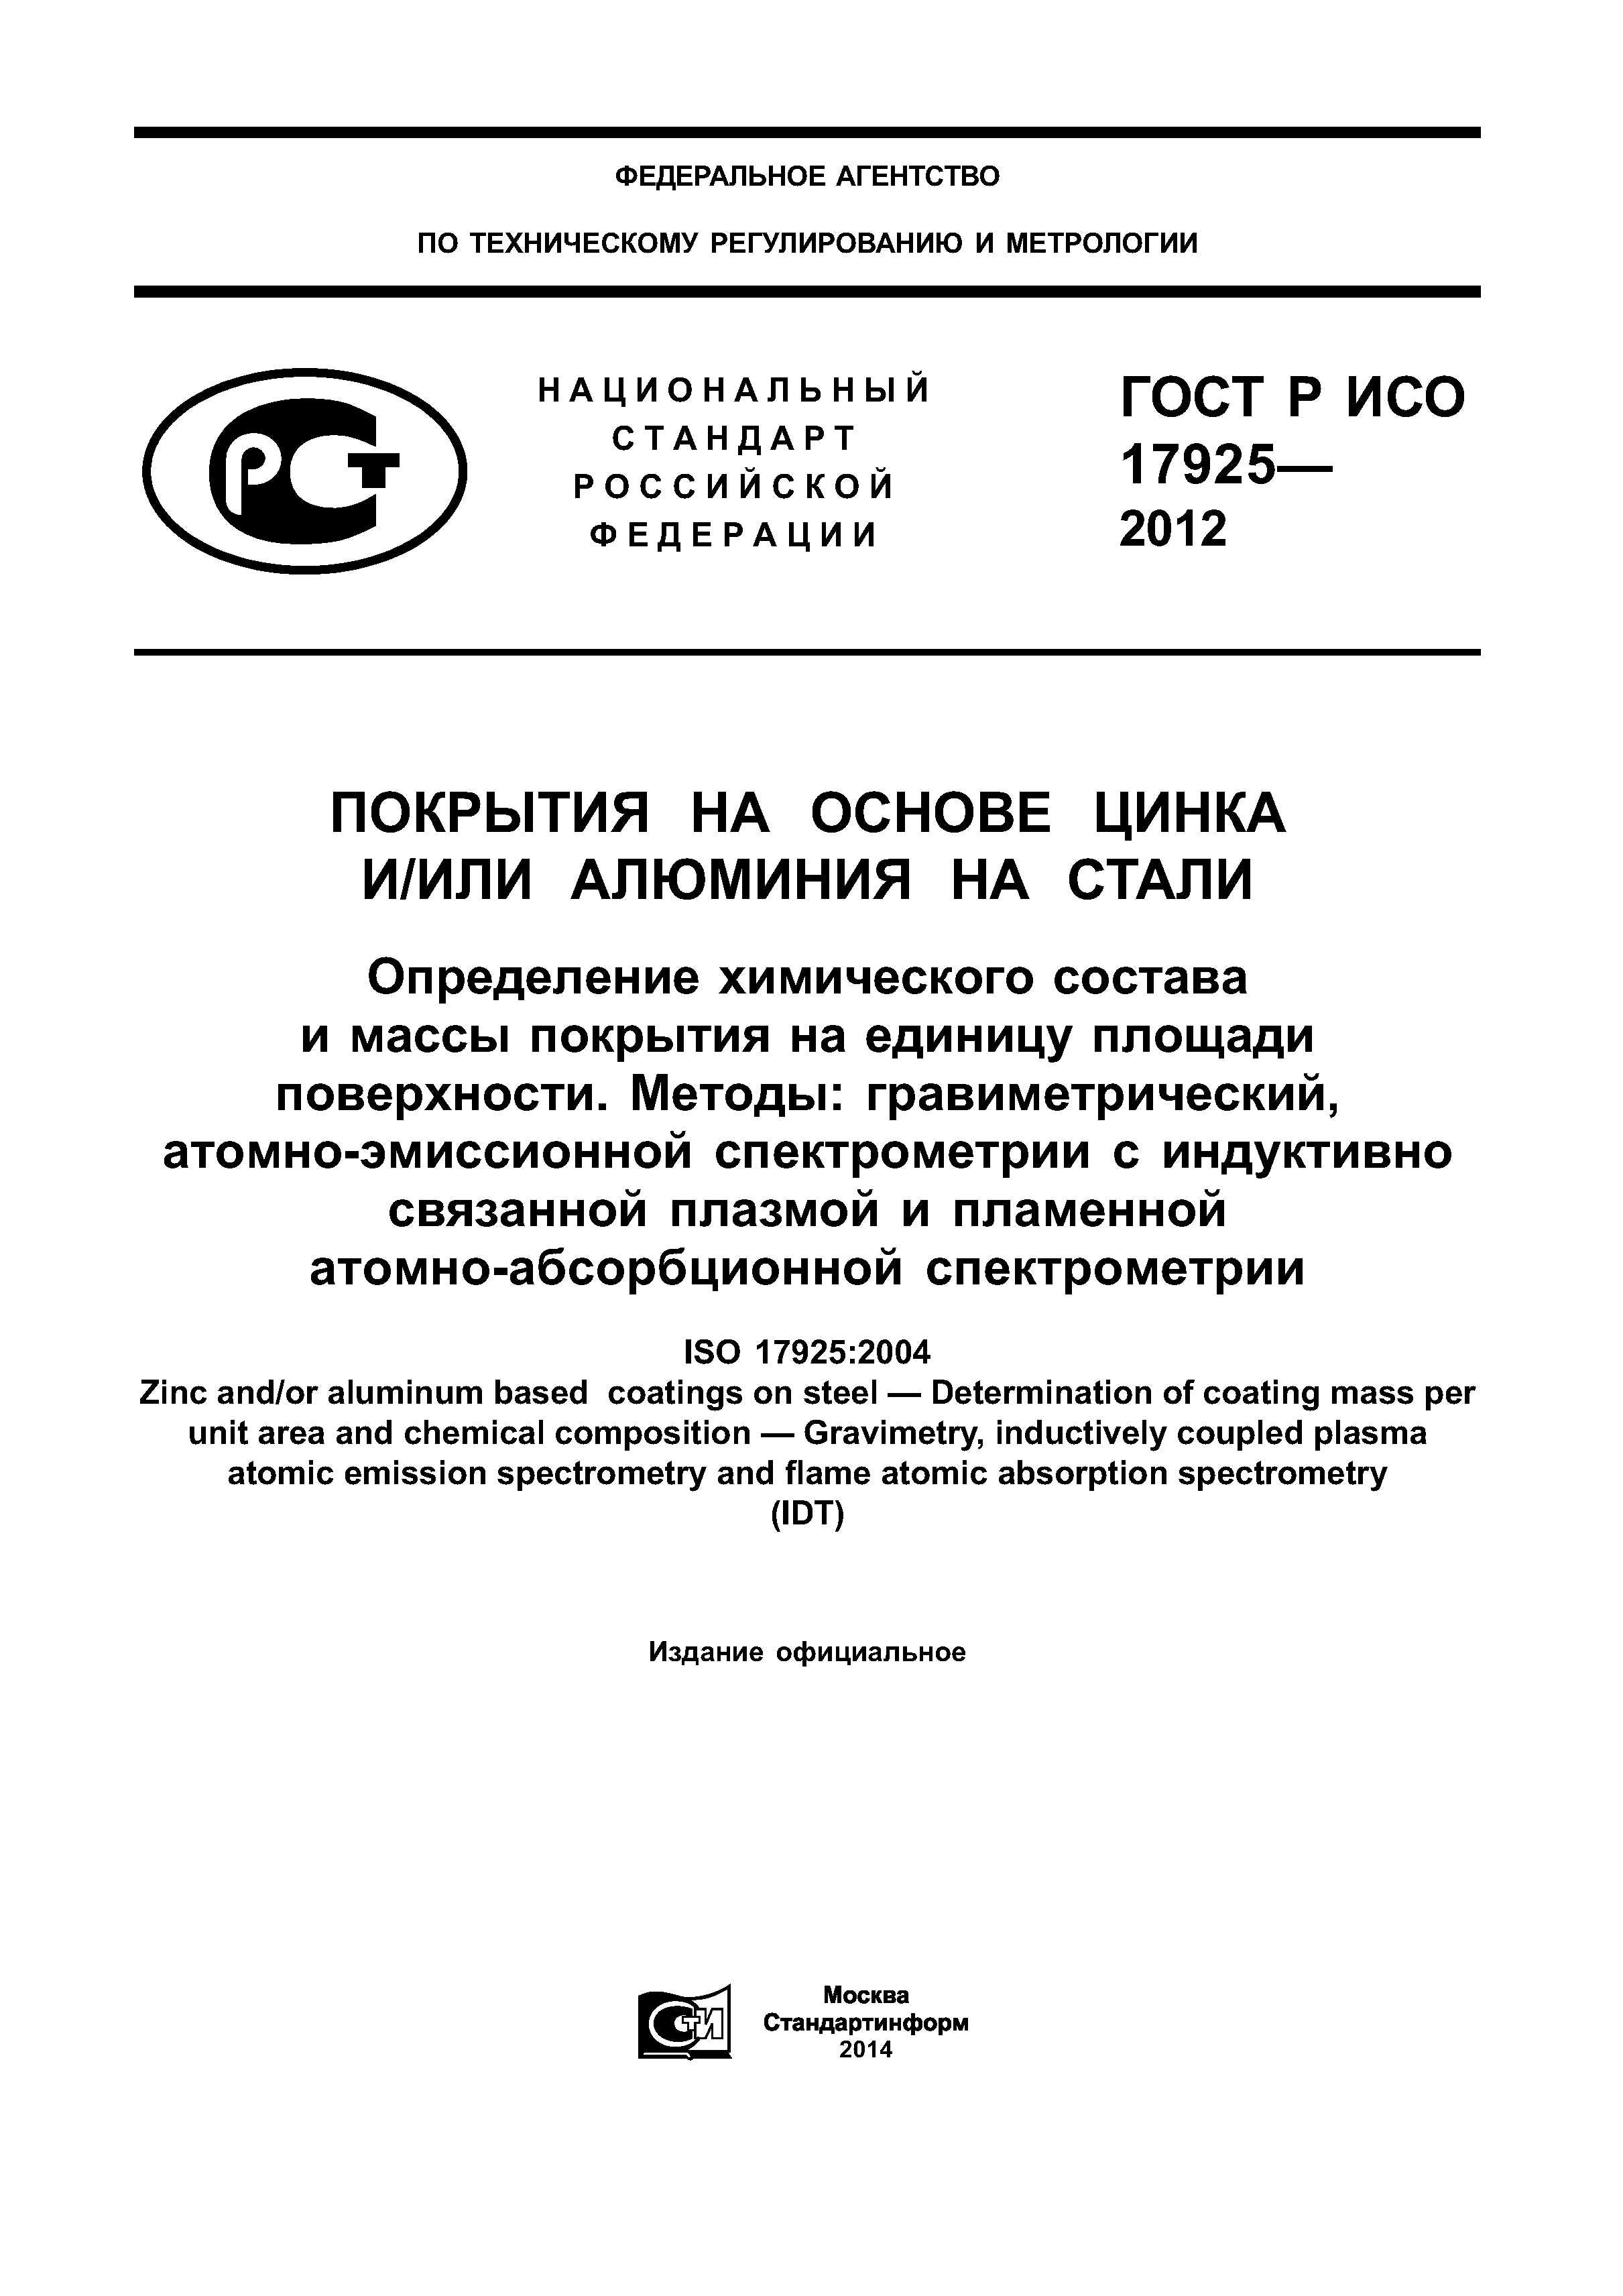 ГОСТ Р ИСО 17925-2012